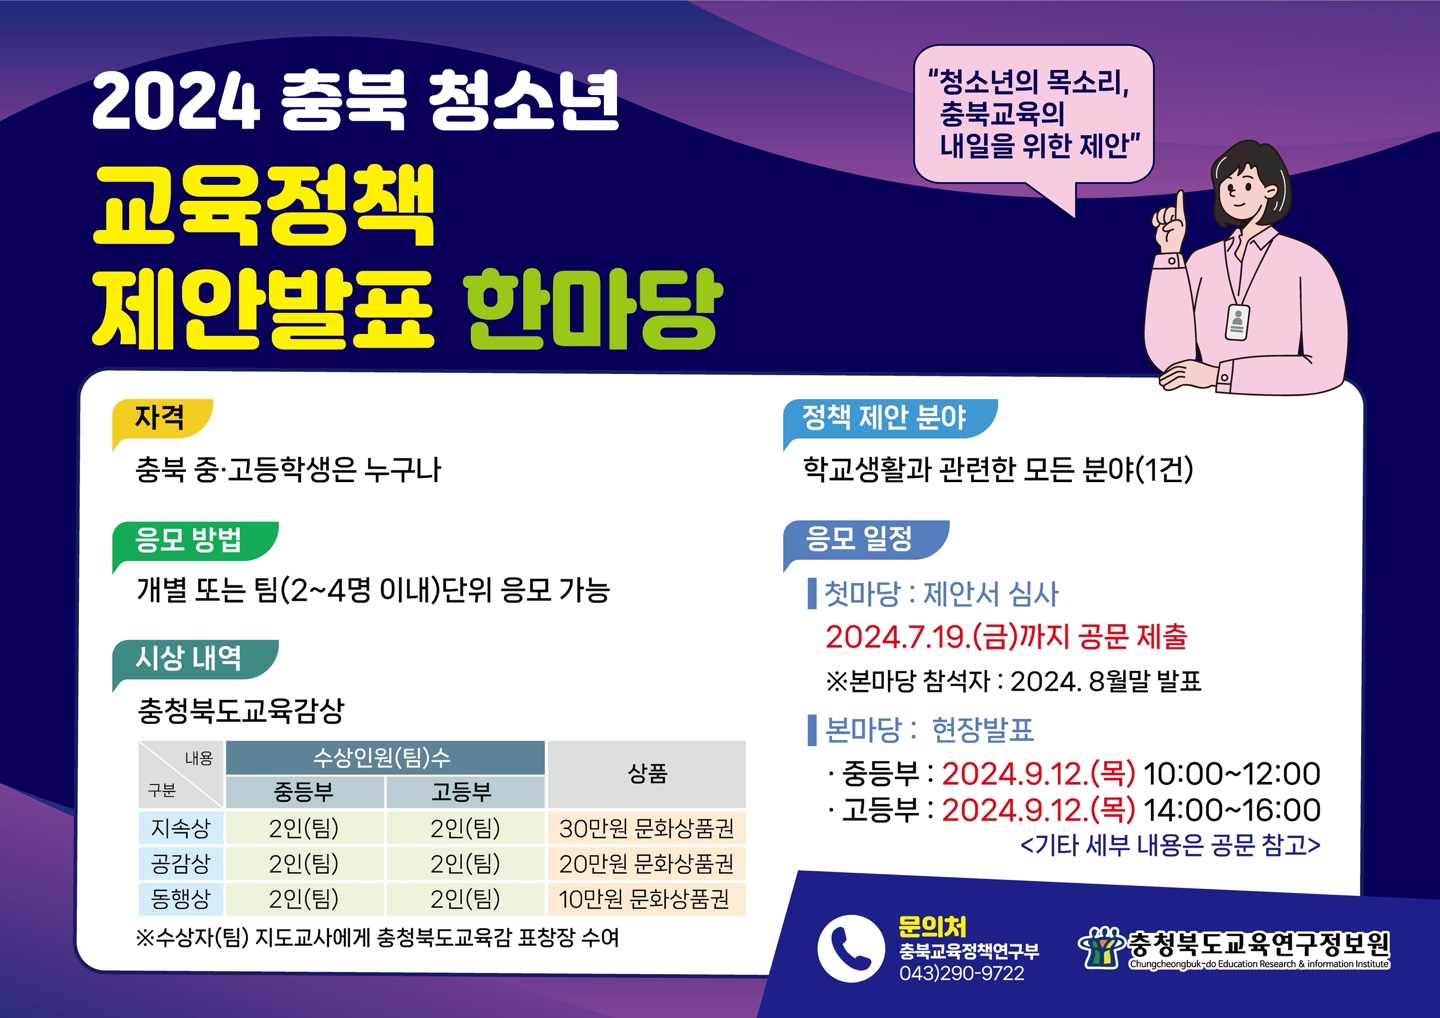 사본 -2024. 충북 청소년 교육정책 제안 발표 한마당 포스터